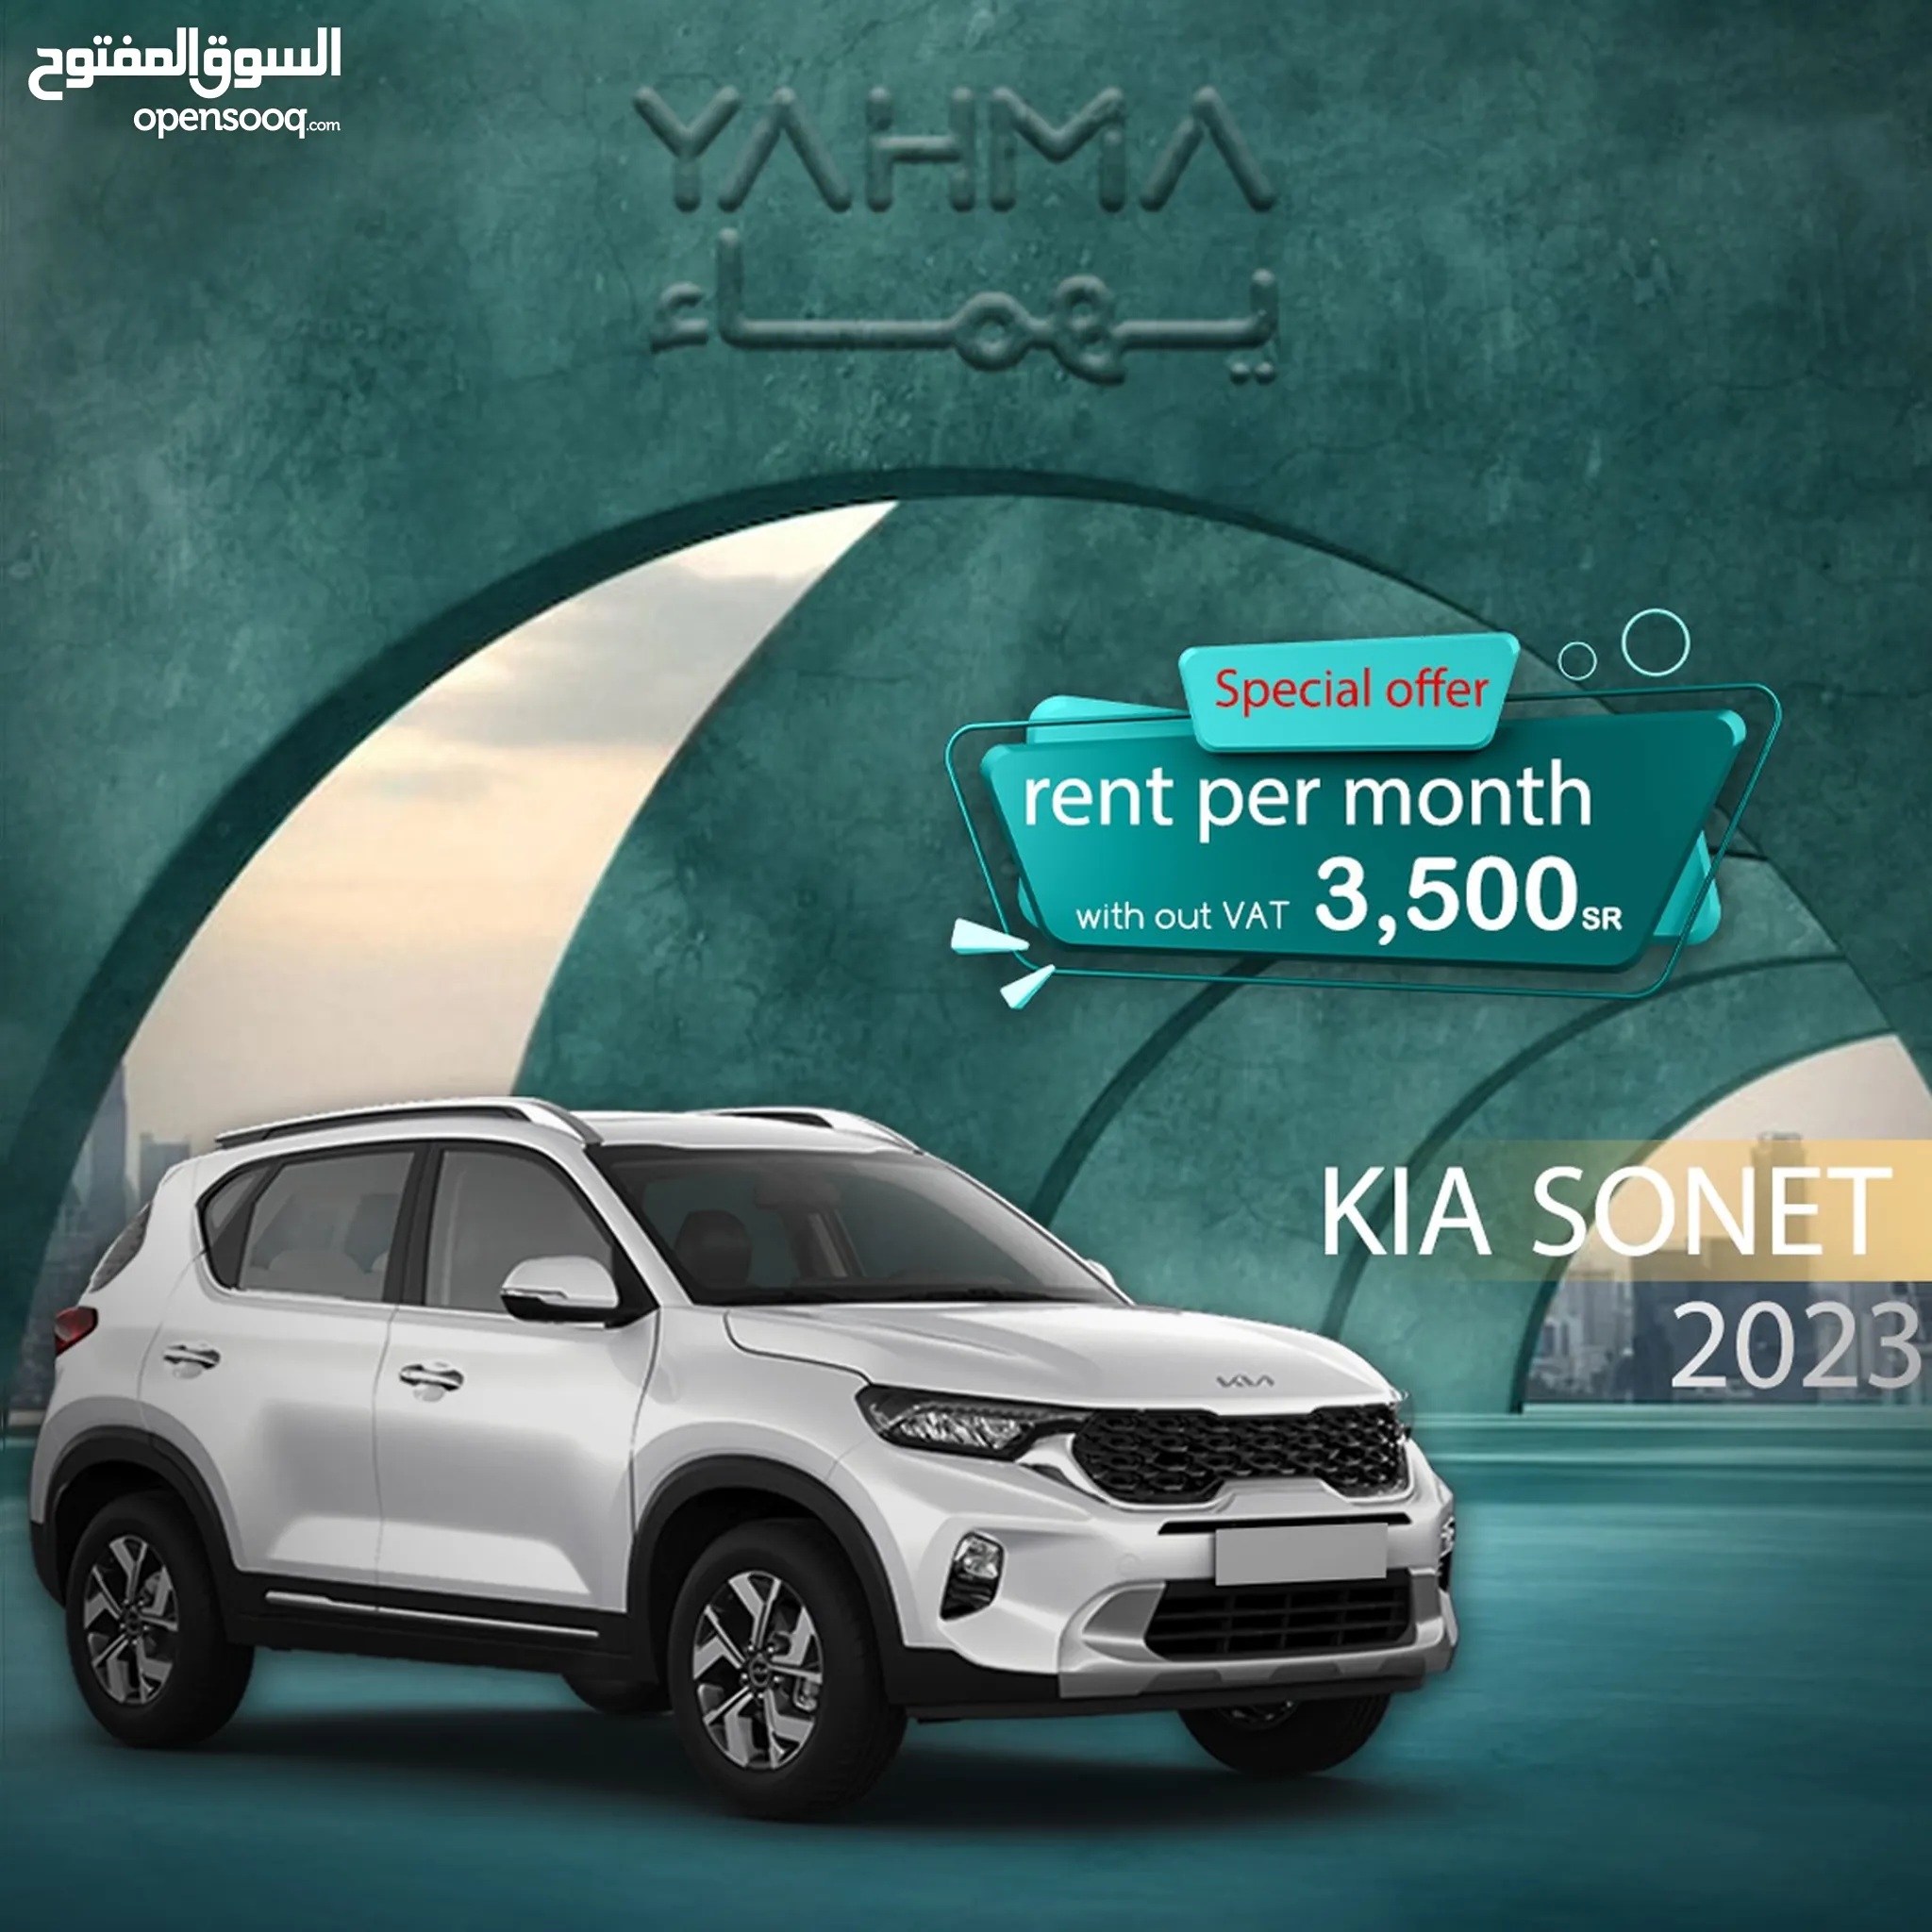 تأجير سيارات كيا في السعودية - ايجار سيارات كيا - يومي, شهري : أفضل سعر |  السوق المفتوح